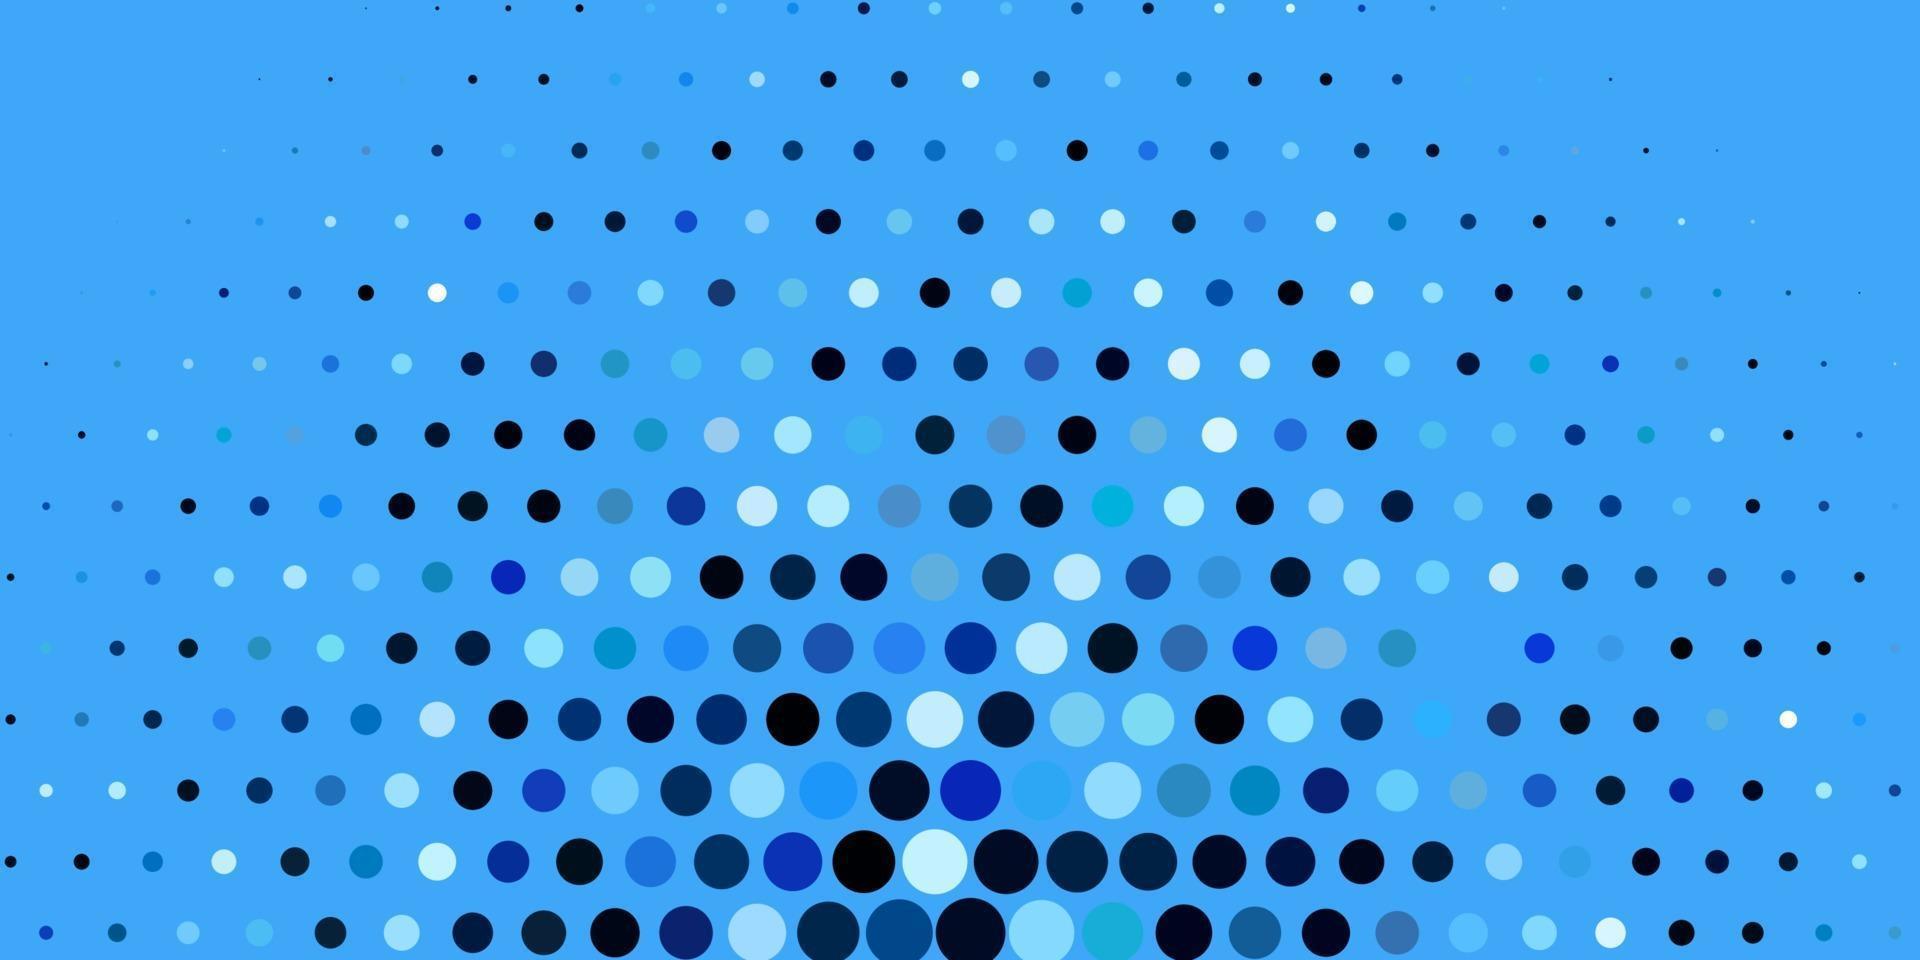 layout de vetor de azul escuro com formas de círculo.